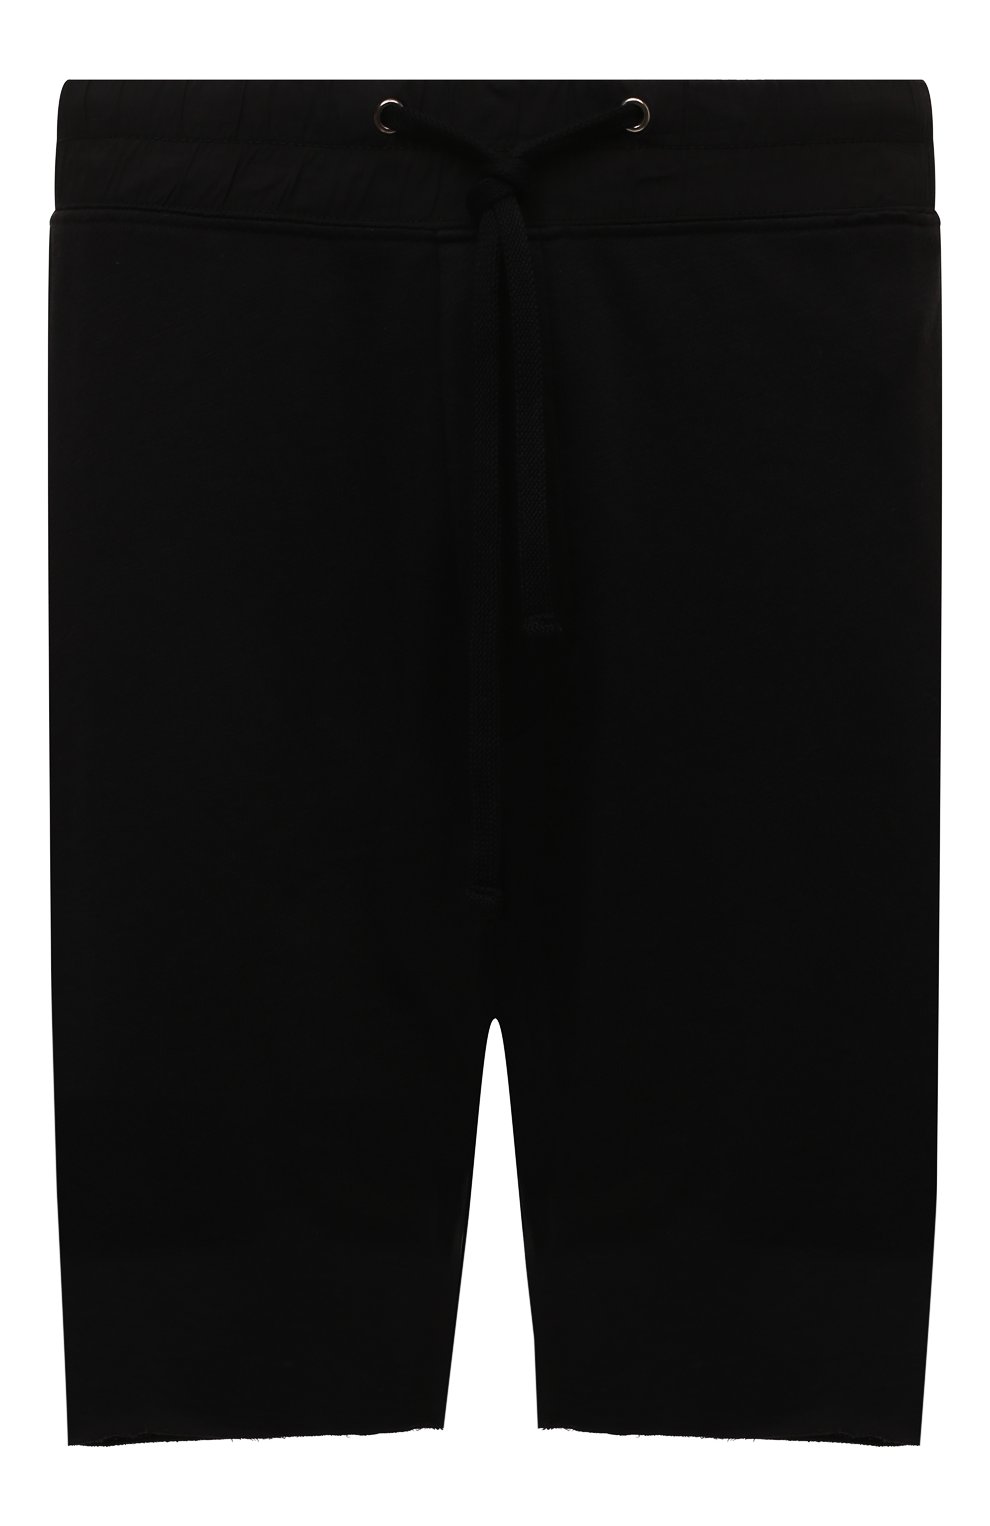 Мужские хлопковые шорты JAMES PERSE черного цвета, арт. MXA4238 | Фото 1 (Длина Шорты М: До колена; Случай: Повседневный; Материал внешний: Хлопок; Стили: Спорт-шик)